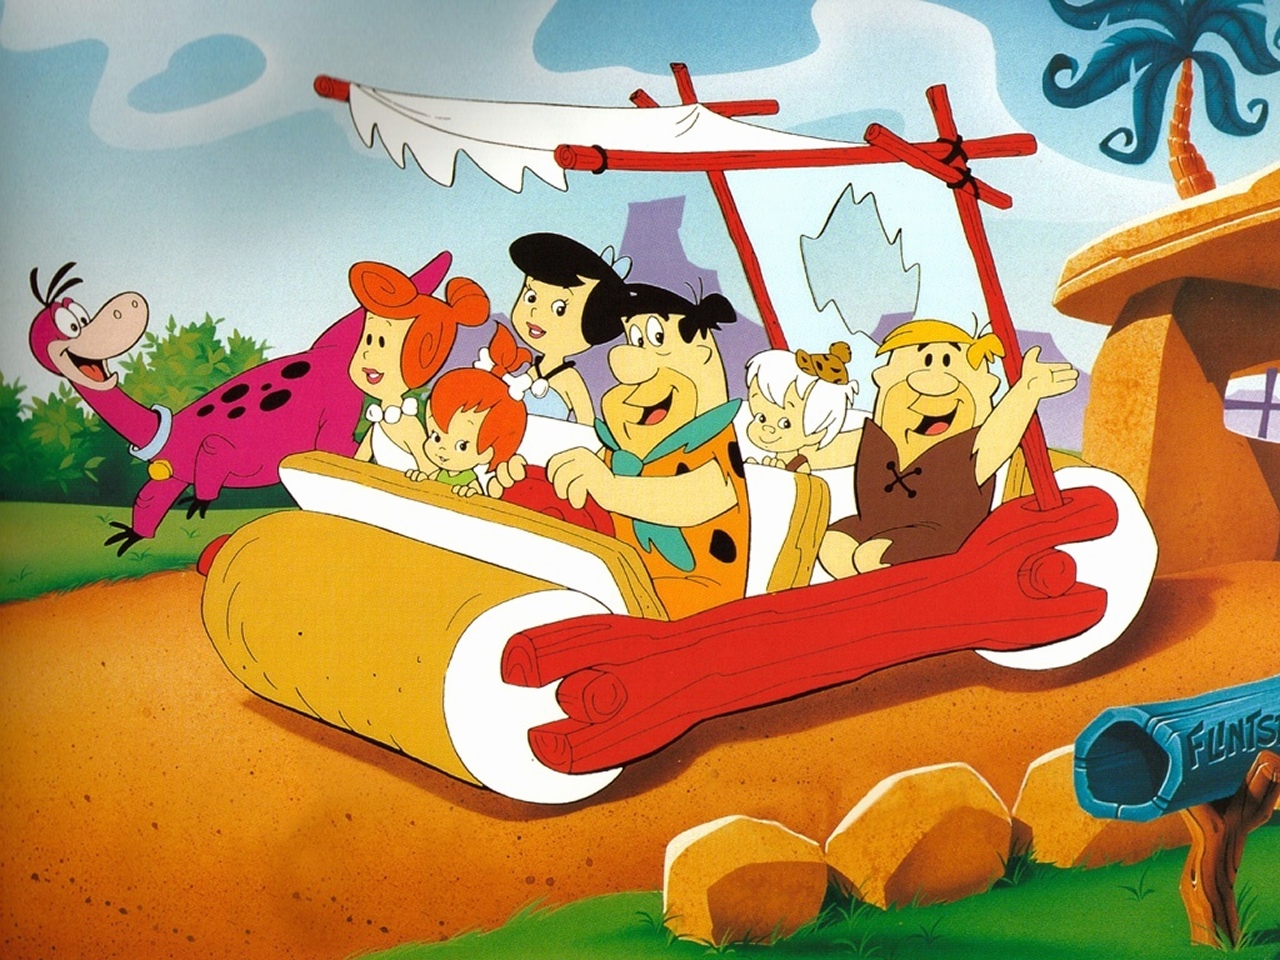 "The Flintstones" desktop wallpaper (1280 x 960 pixels)